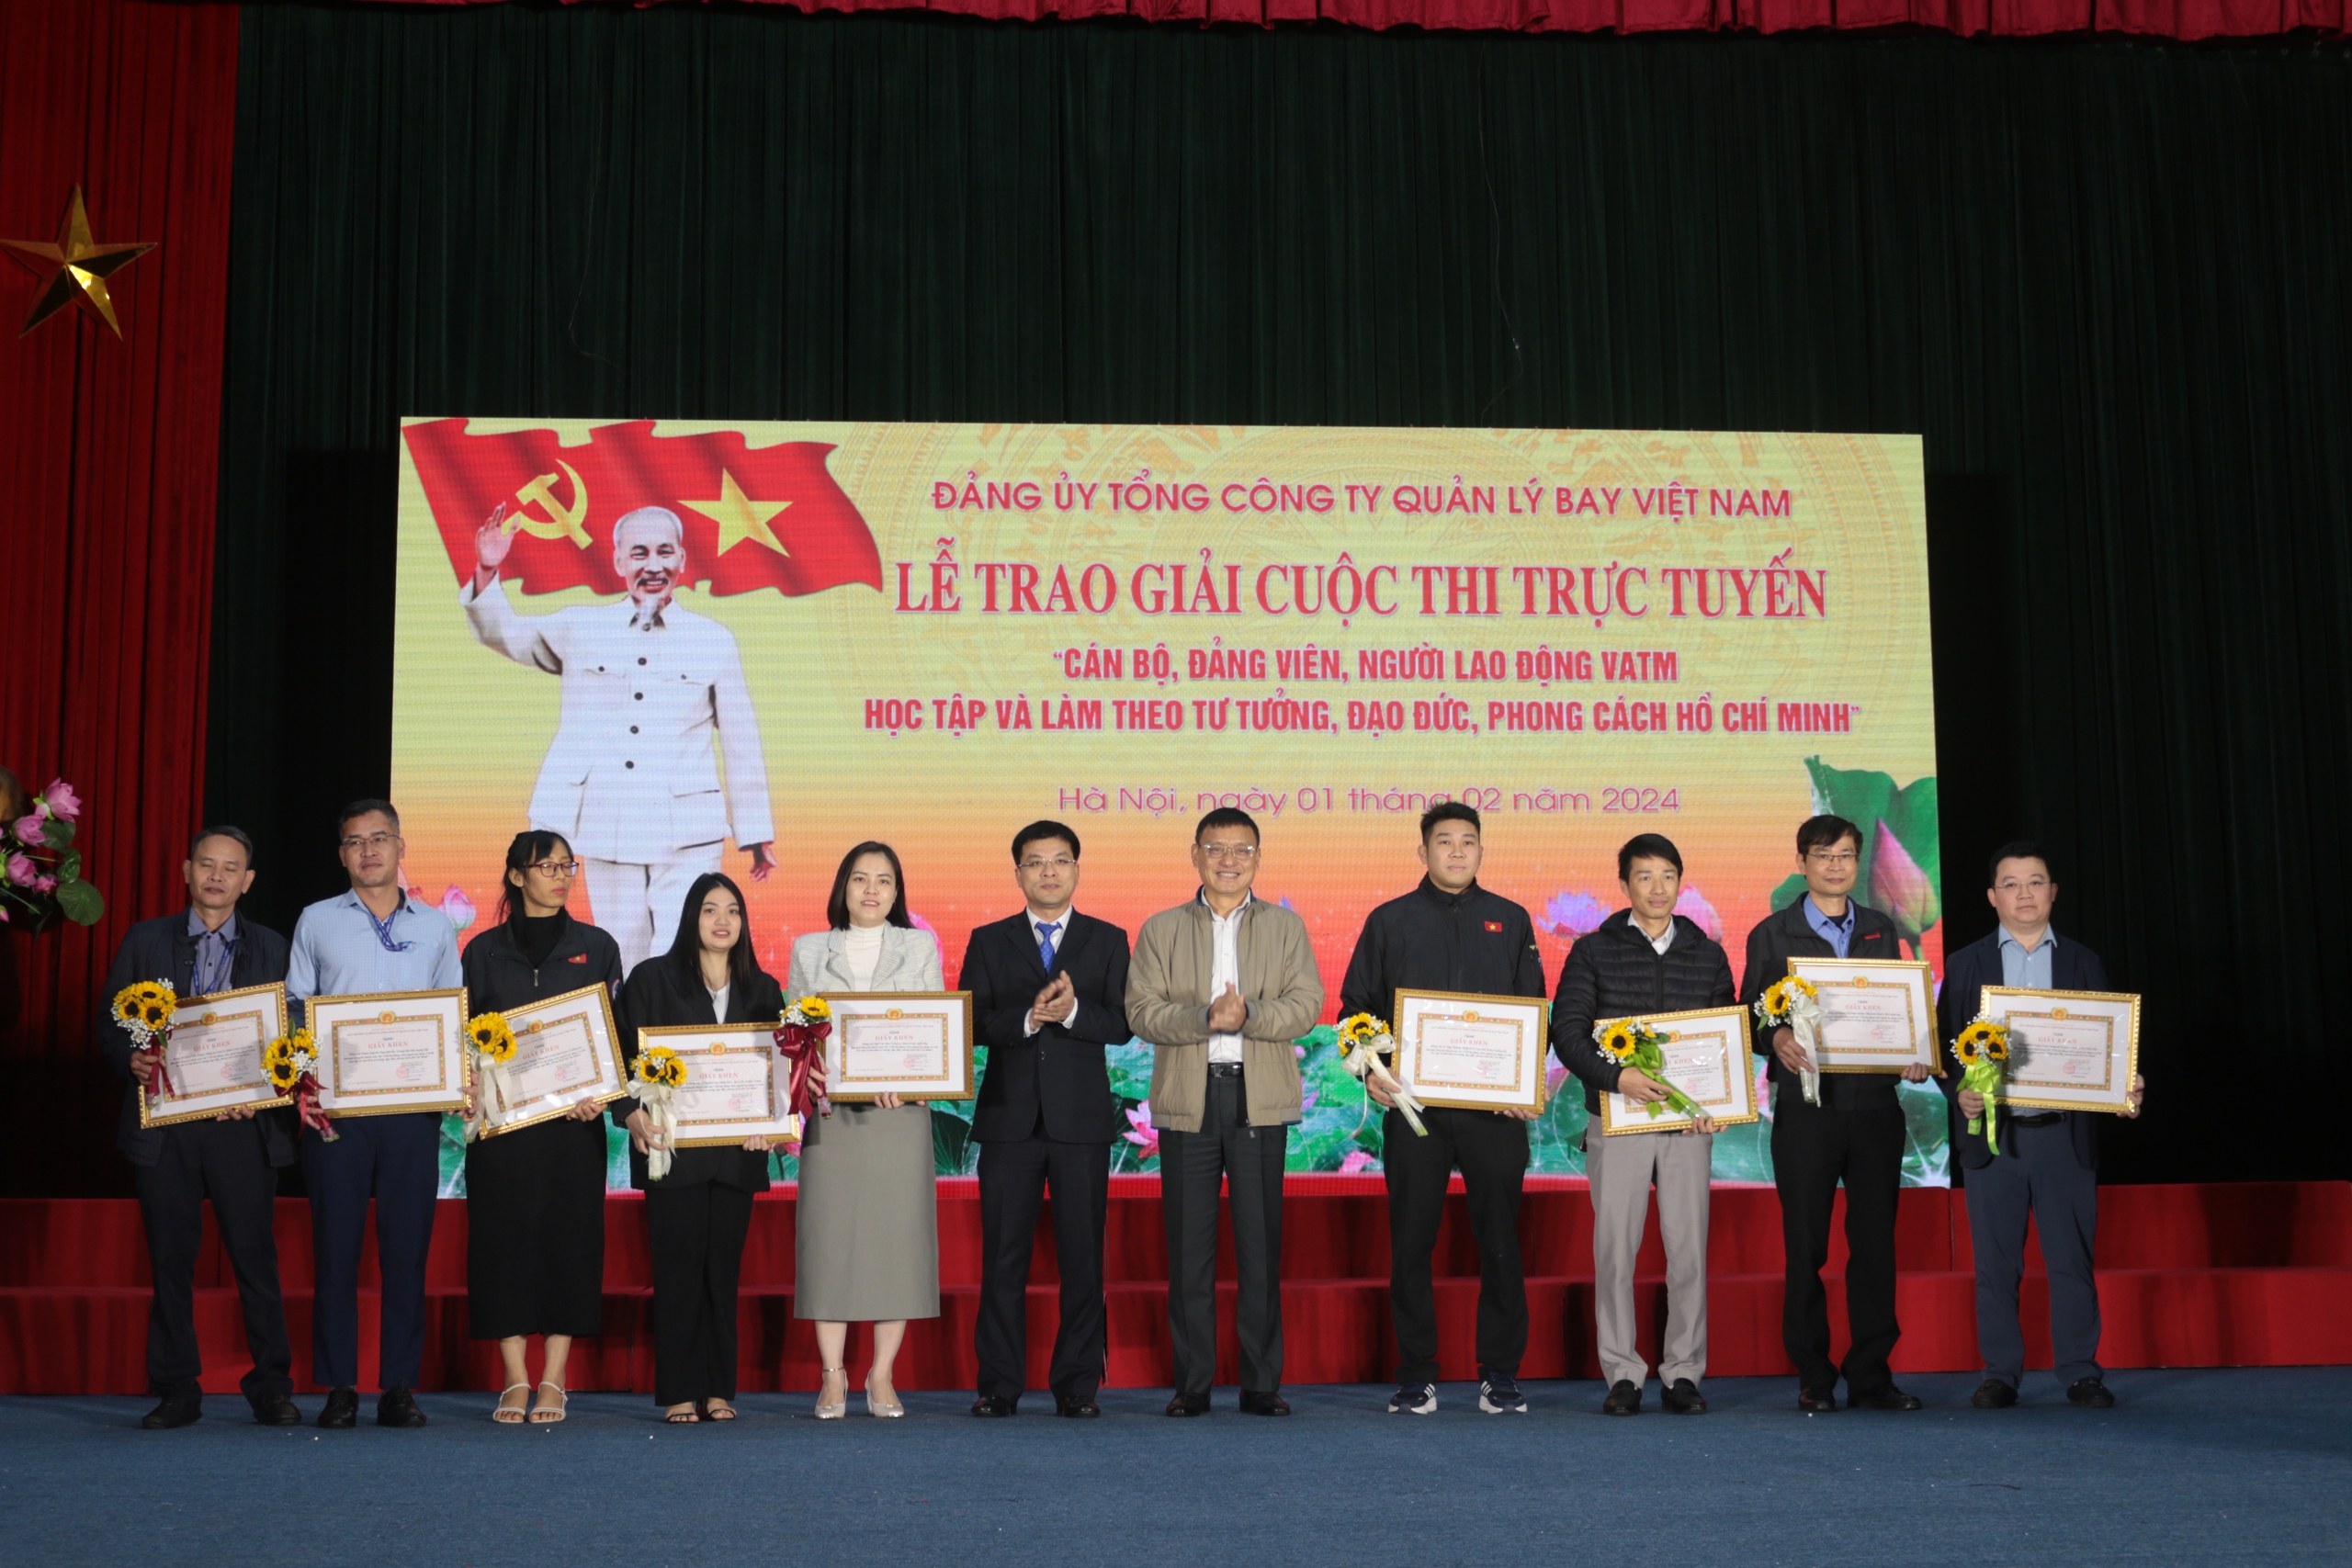 Trao giải cuộc thi "Cán bộ, đảng viên, người lao động VATM học tập, làm theo tư tưởng, đạo đức, phong cách Hồ Chí Minh"- Ảnh 8.